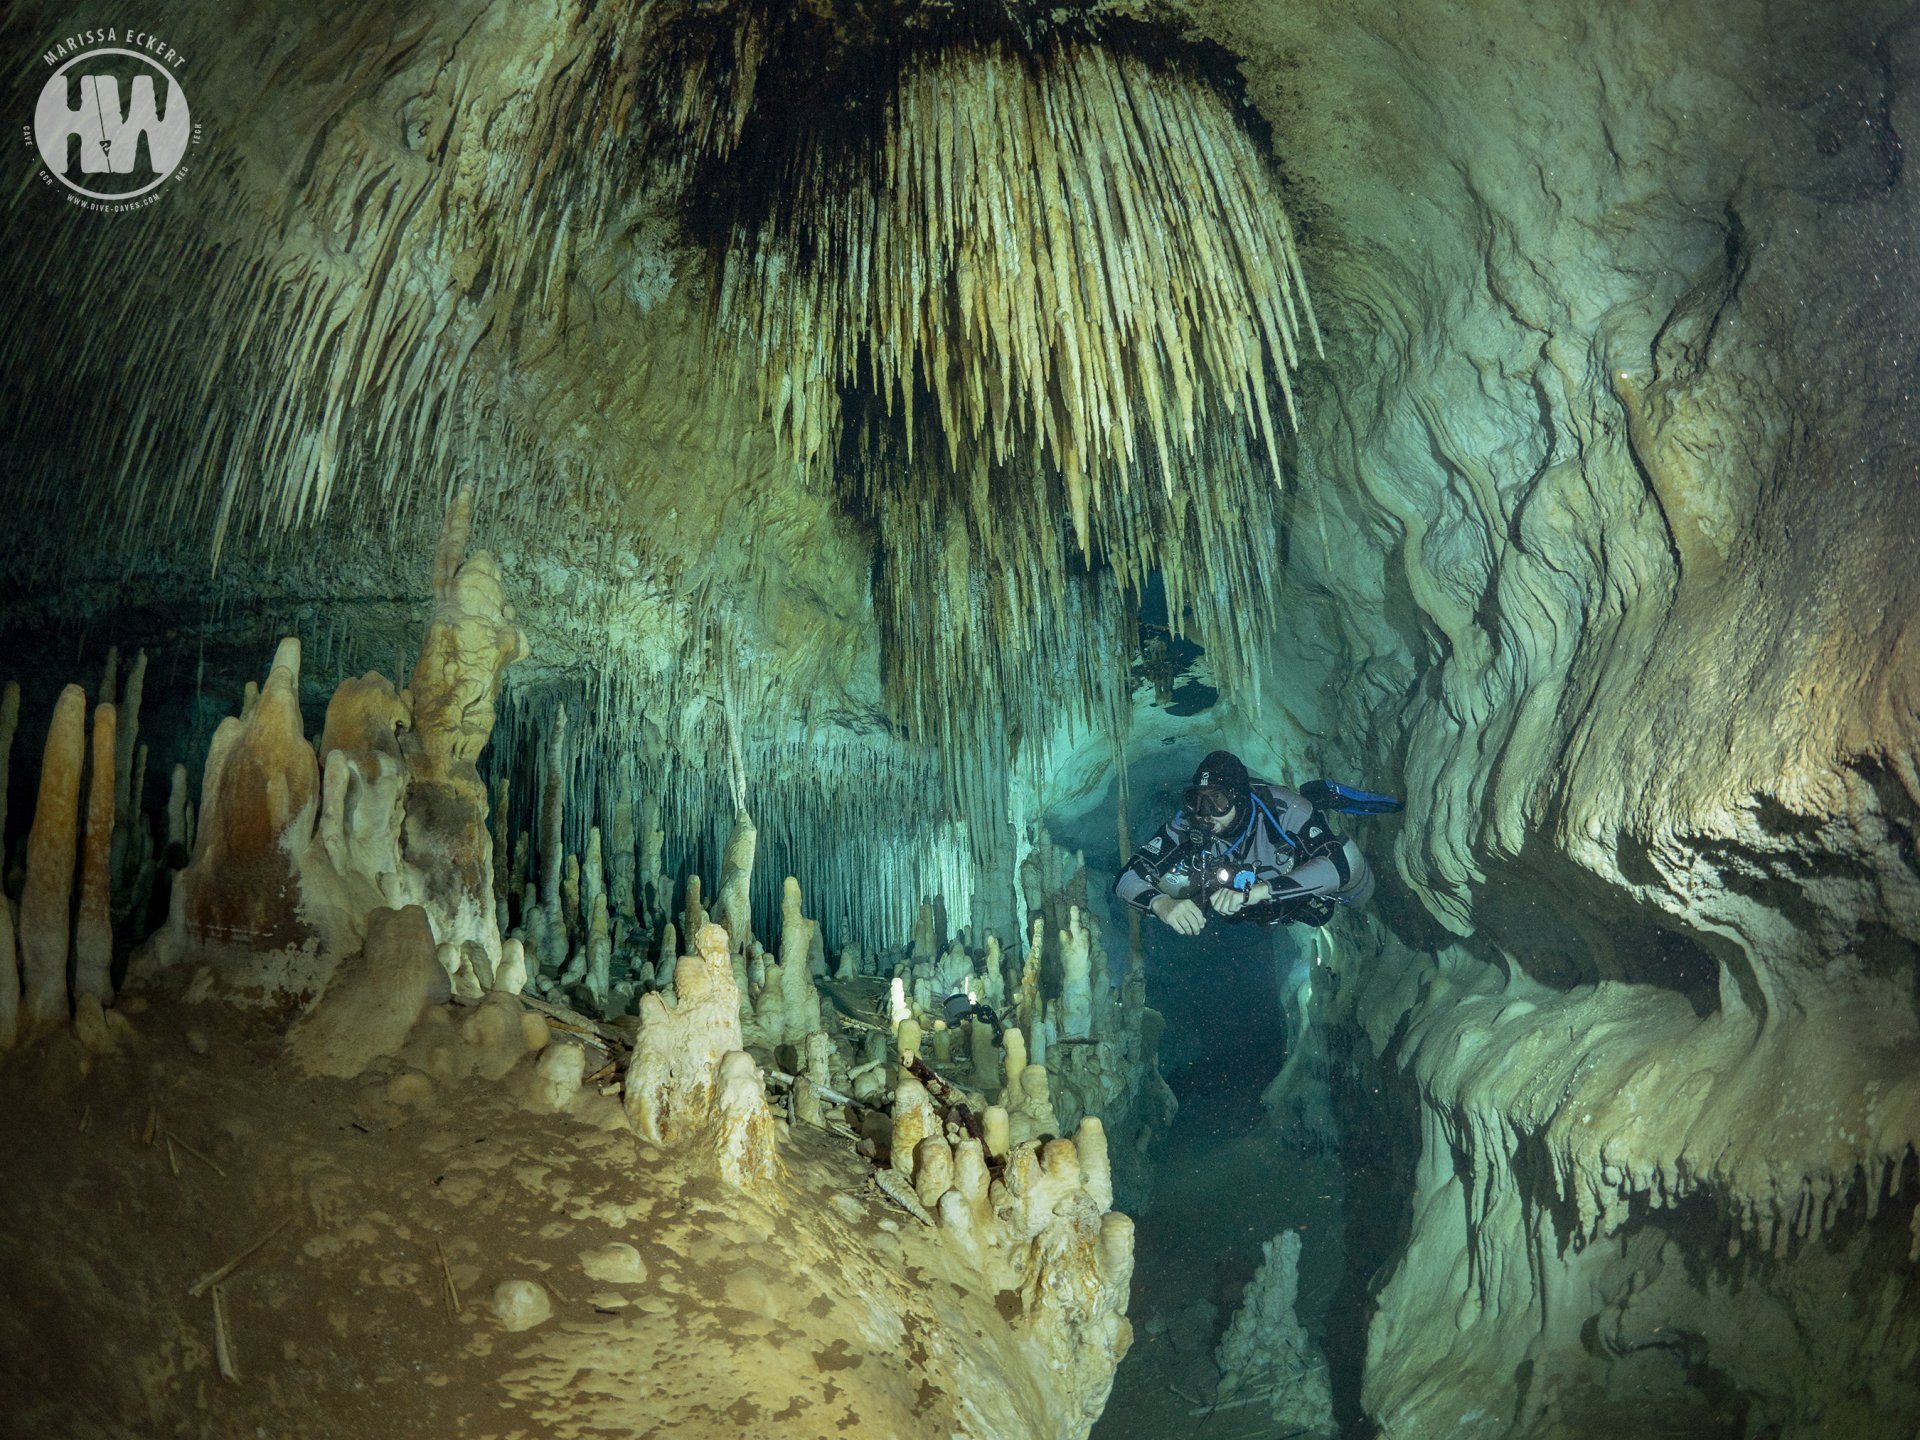 Scuba diving at cave